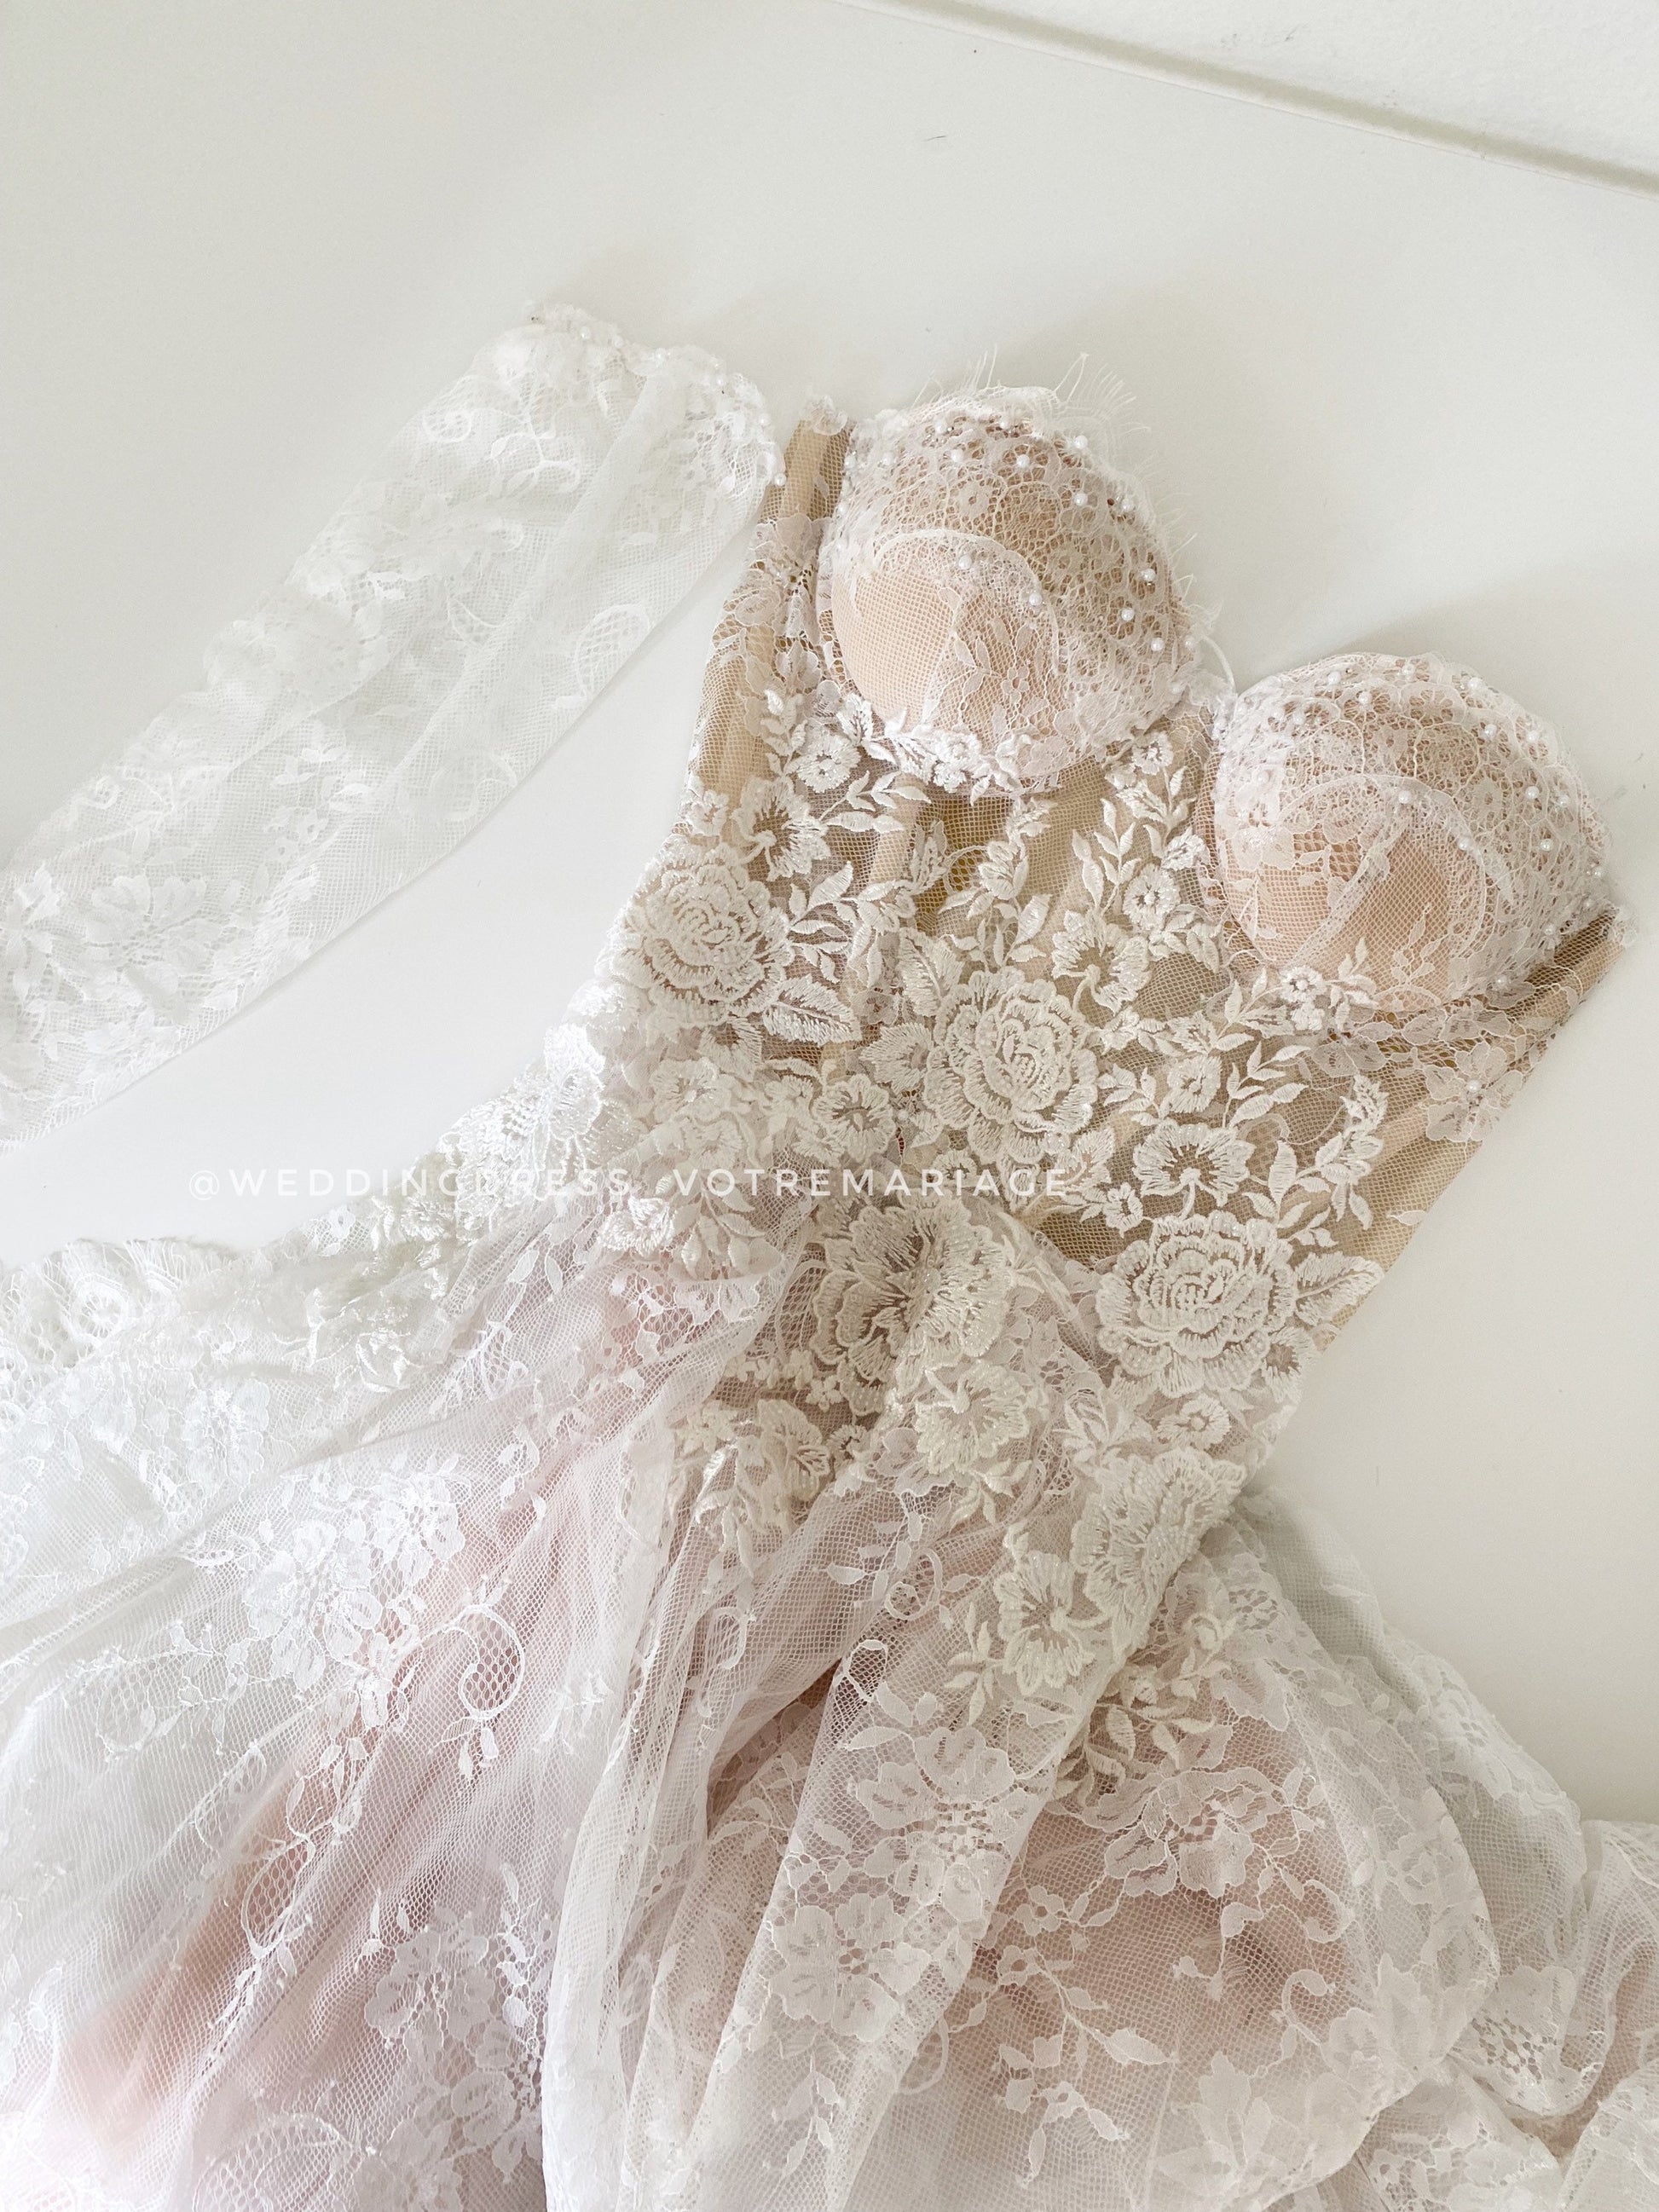 Lace Appliqué wedding Dress